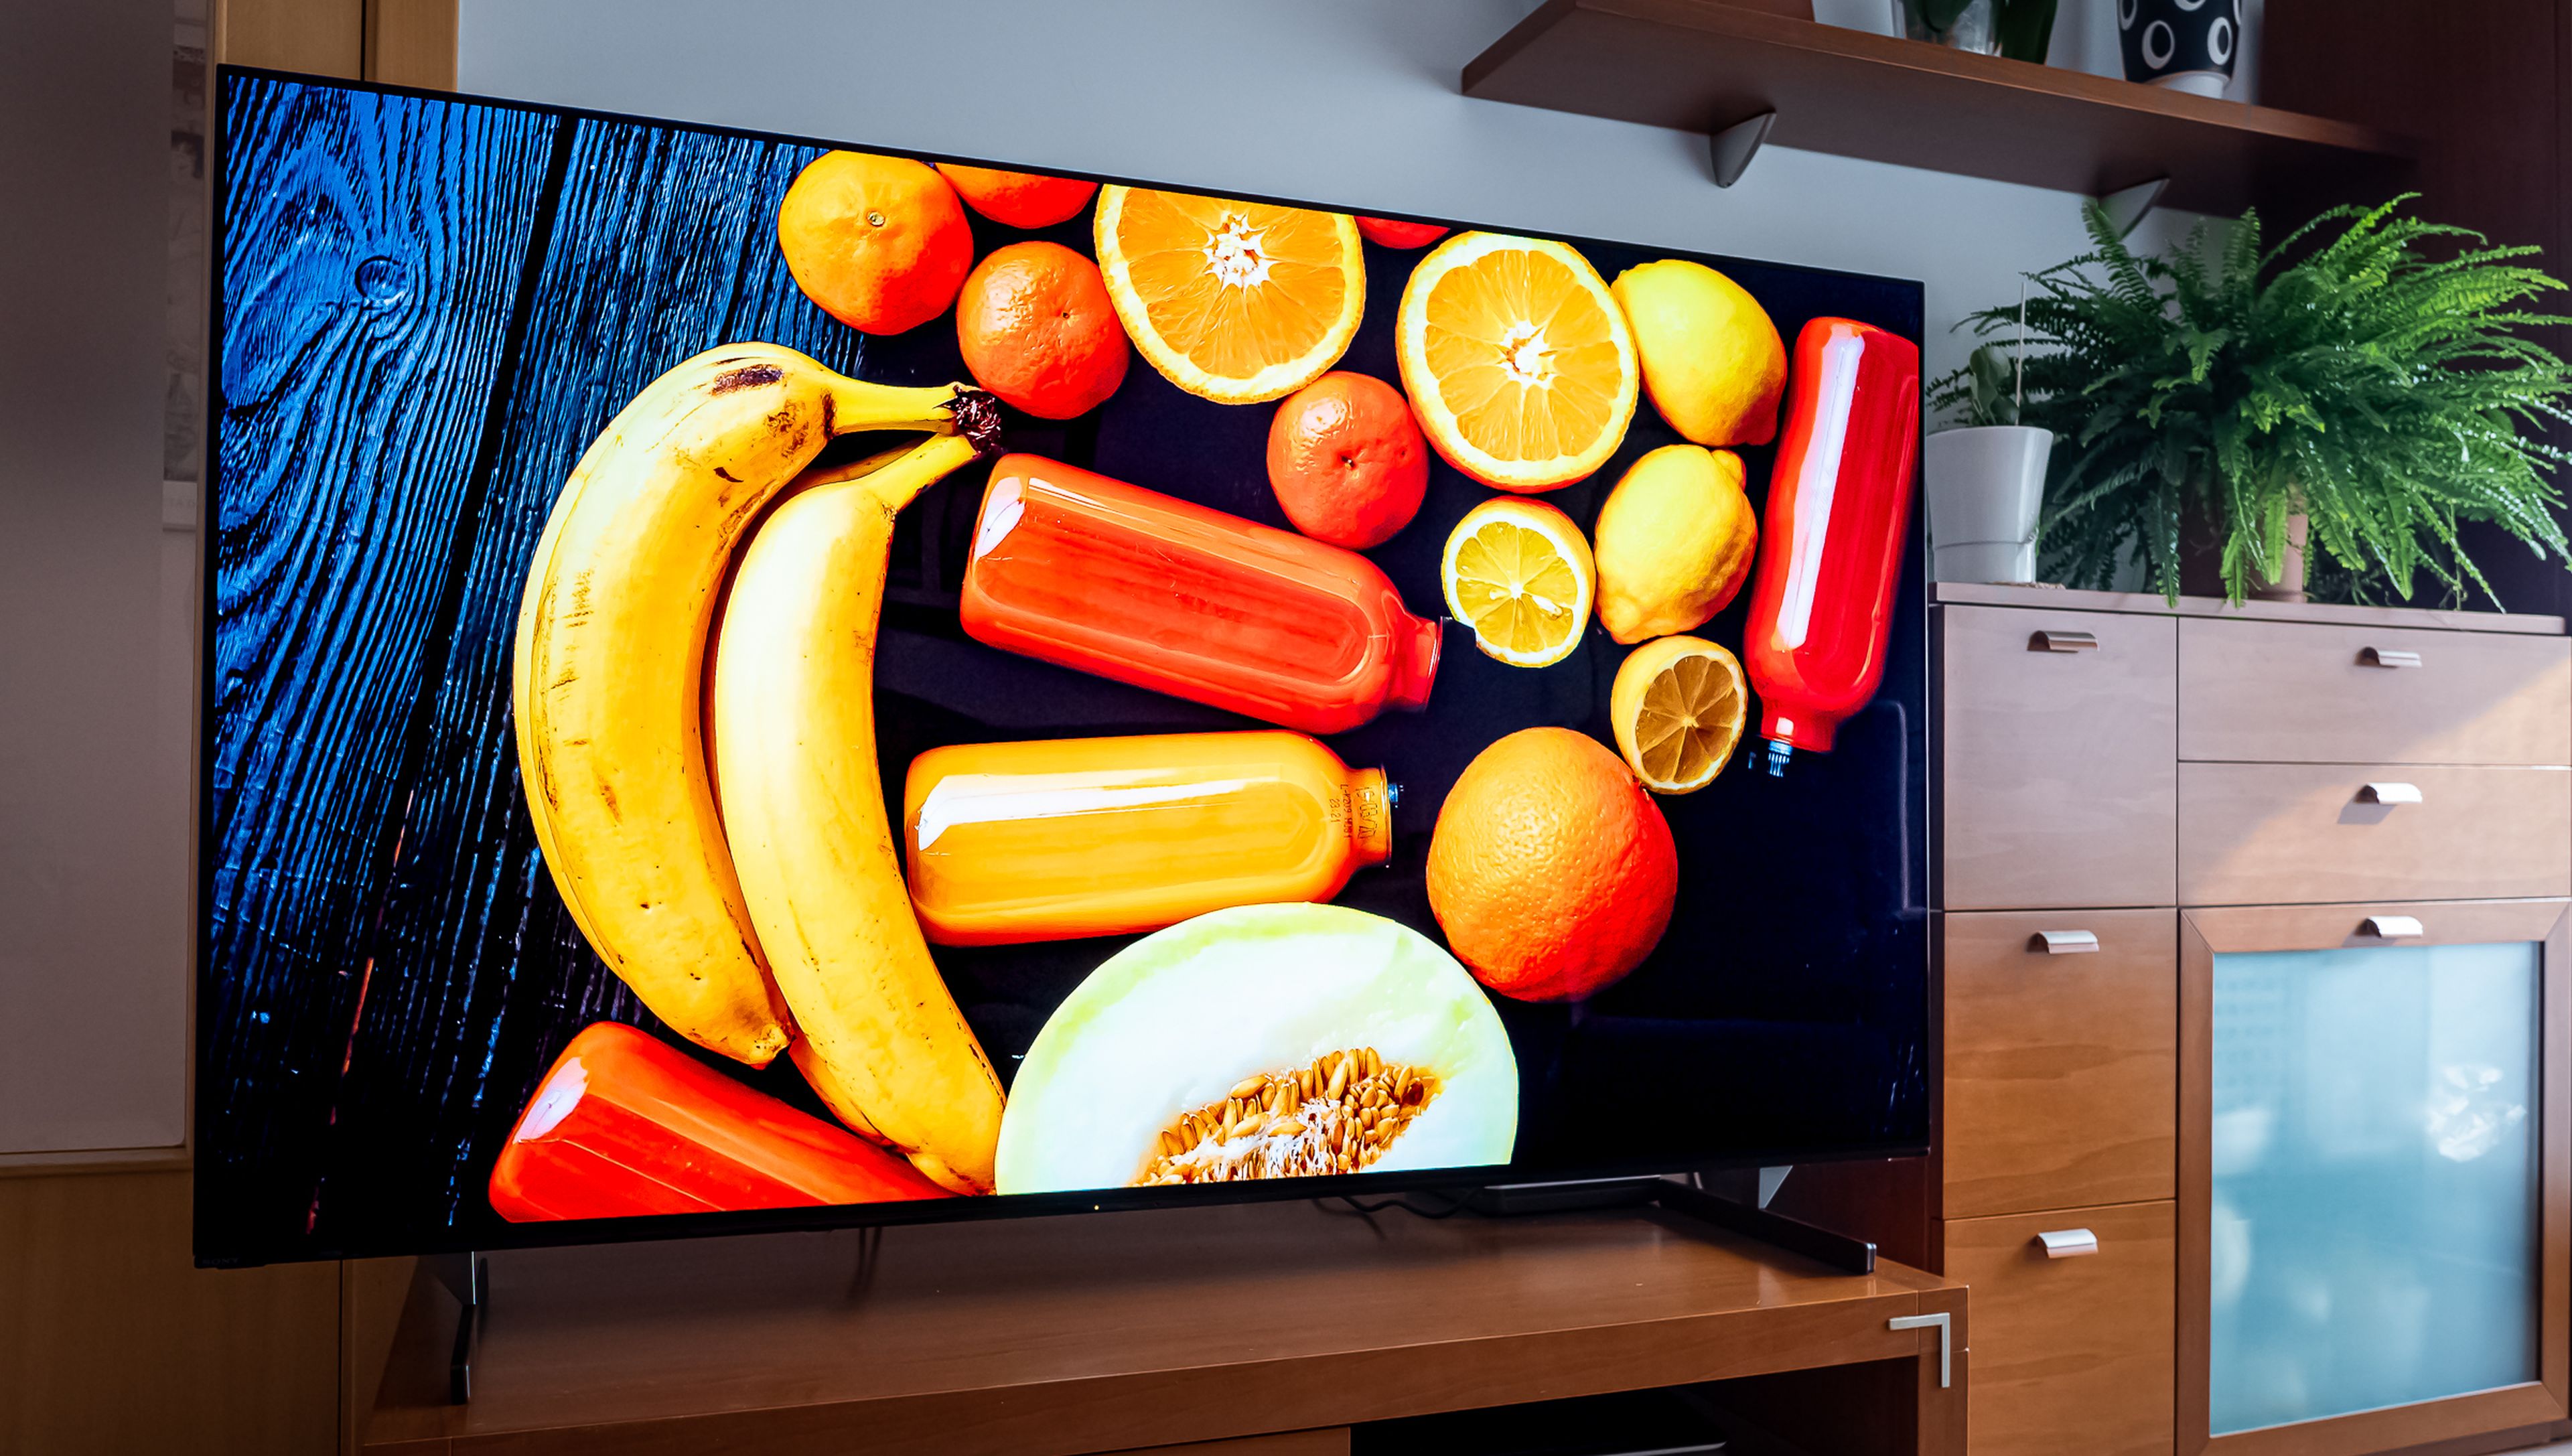 Xiaomi lanza un nuevo televisor barato: es extremadamente fino y